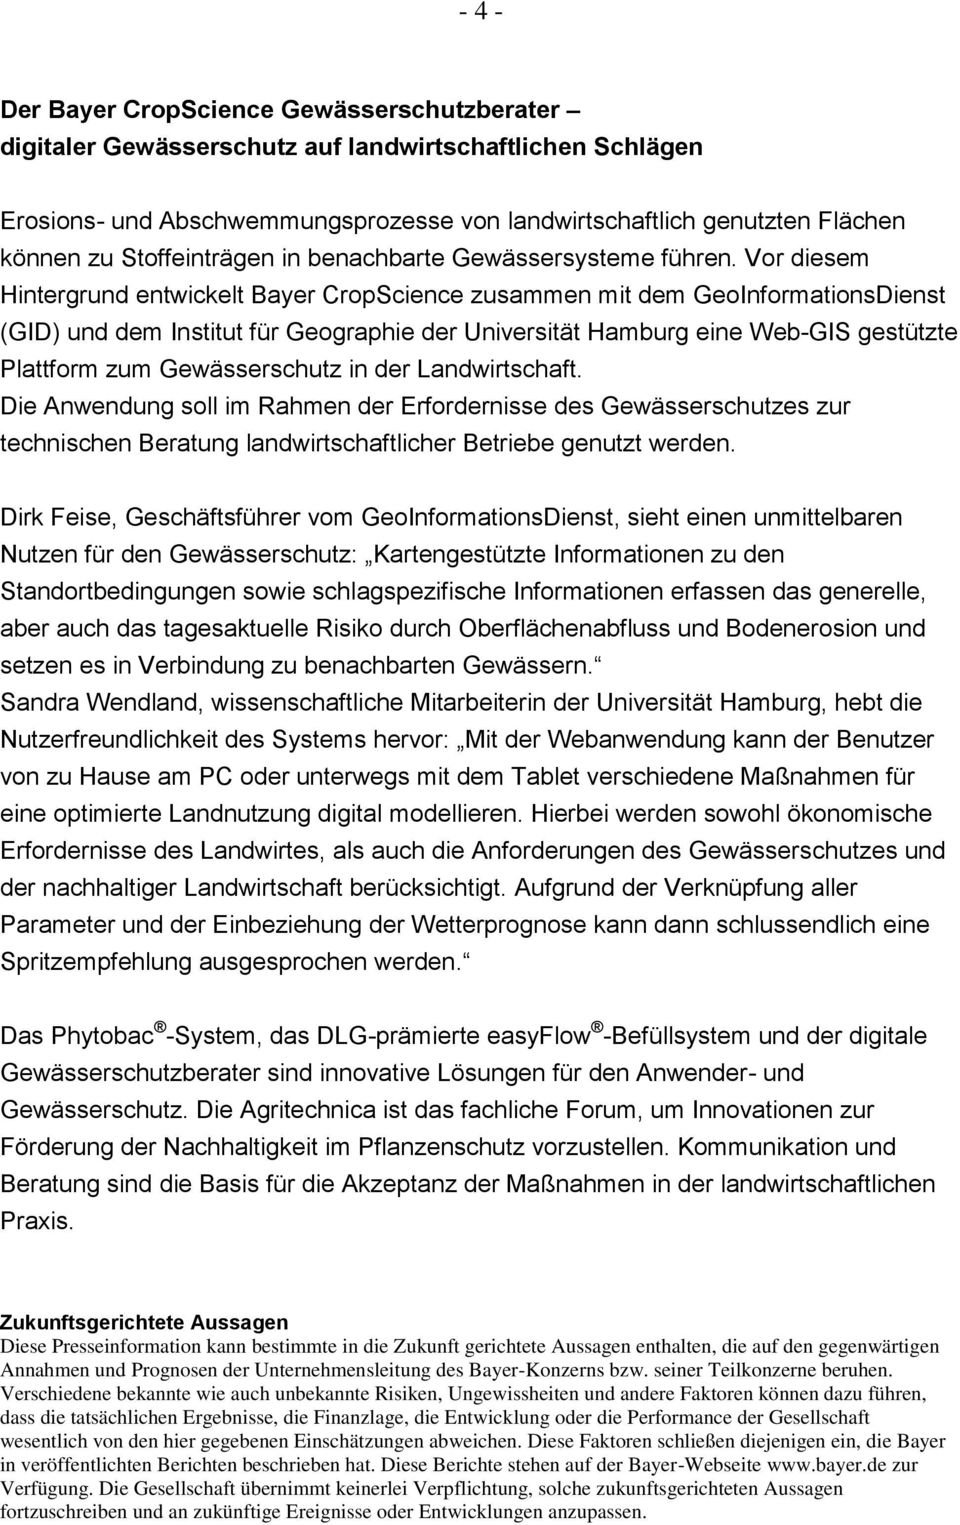 Vor diesem Hintergrund entwickelt Bayer CropScience zusammen mit dem GeoInformationsDienst (GID) und dem Institut für Geographie der Universität Hamburg eine Web-GIS gestützte Plattform zum